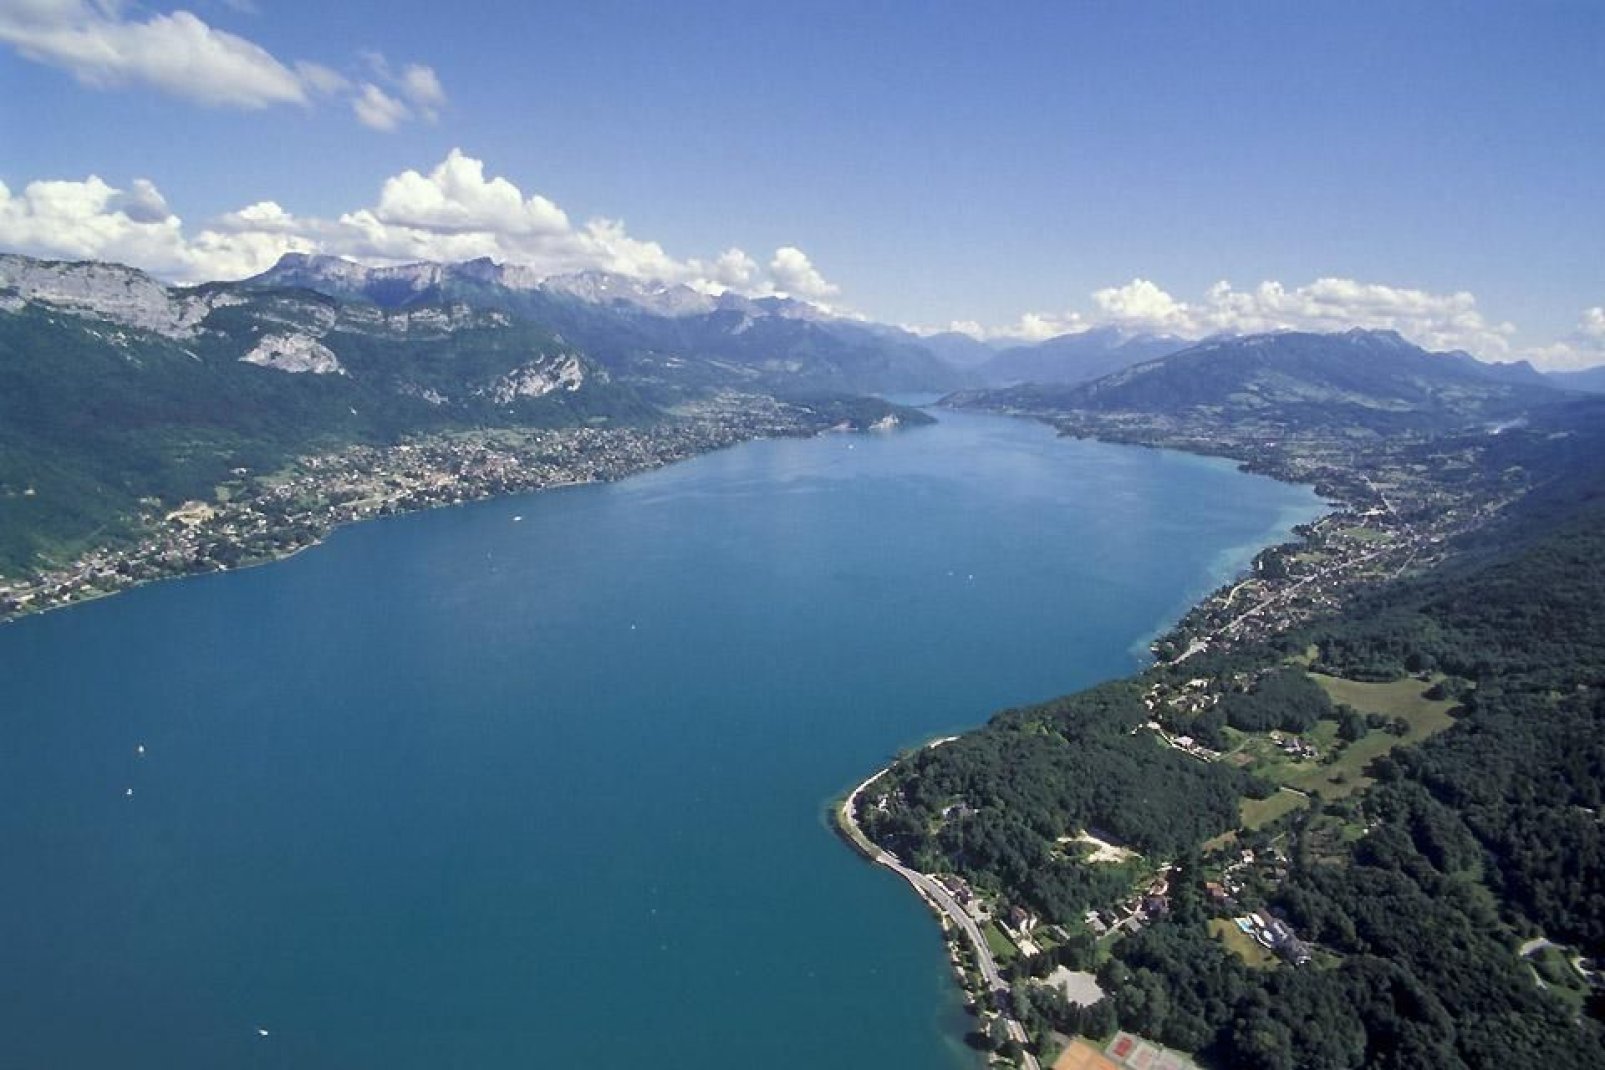 La superficie di questo lago, soprannominato il lago blu, è di quasi 28 km. Questo luogo gode di un ambiente unico, con una fauna e una flora che non hanno eguali.